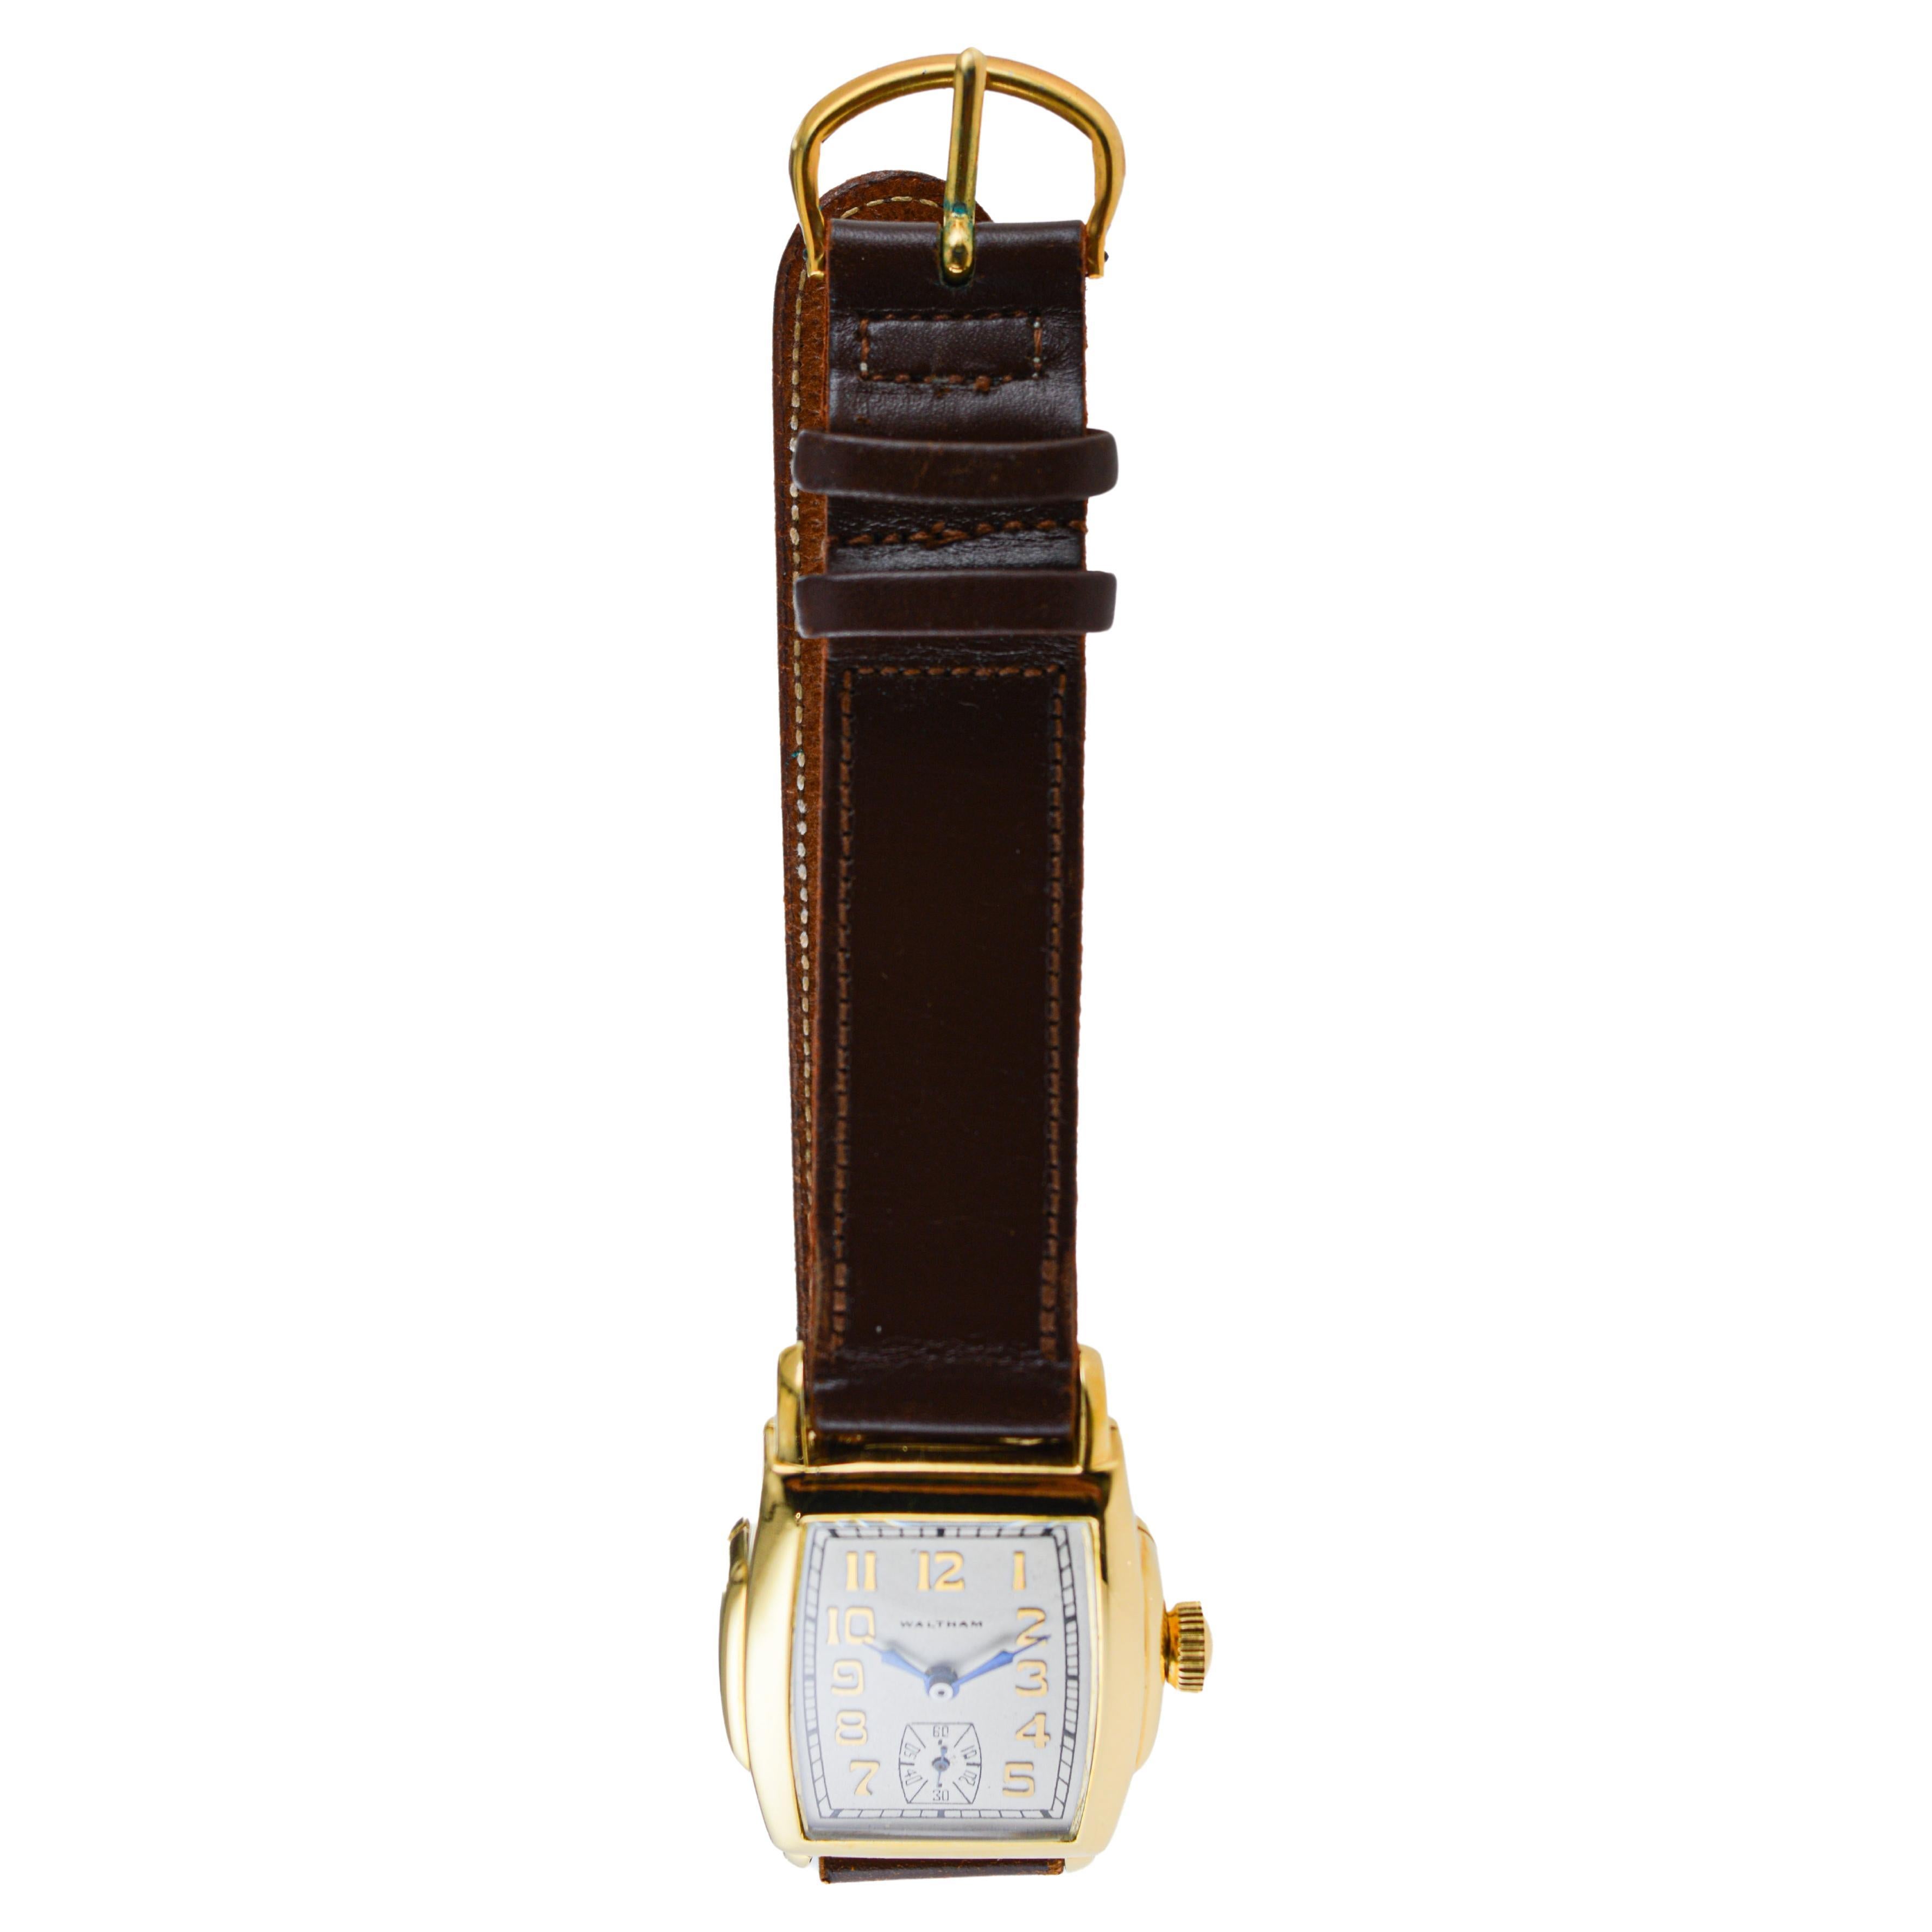 USINE / MAISON : Waltham Watch Company
STYLE / RÉFÉRENCE : Art Déco / Forme Tonneau 
METAL / MATERIAL : Rempli d'or jaune
CIRCA / ANNÉE : années 1920
DIMENSIONS / TAILLE : Longueur 41mm X Largeur 28mm
MOUVEMENT / CALIBRE : Remontage manuel / 21